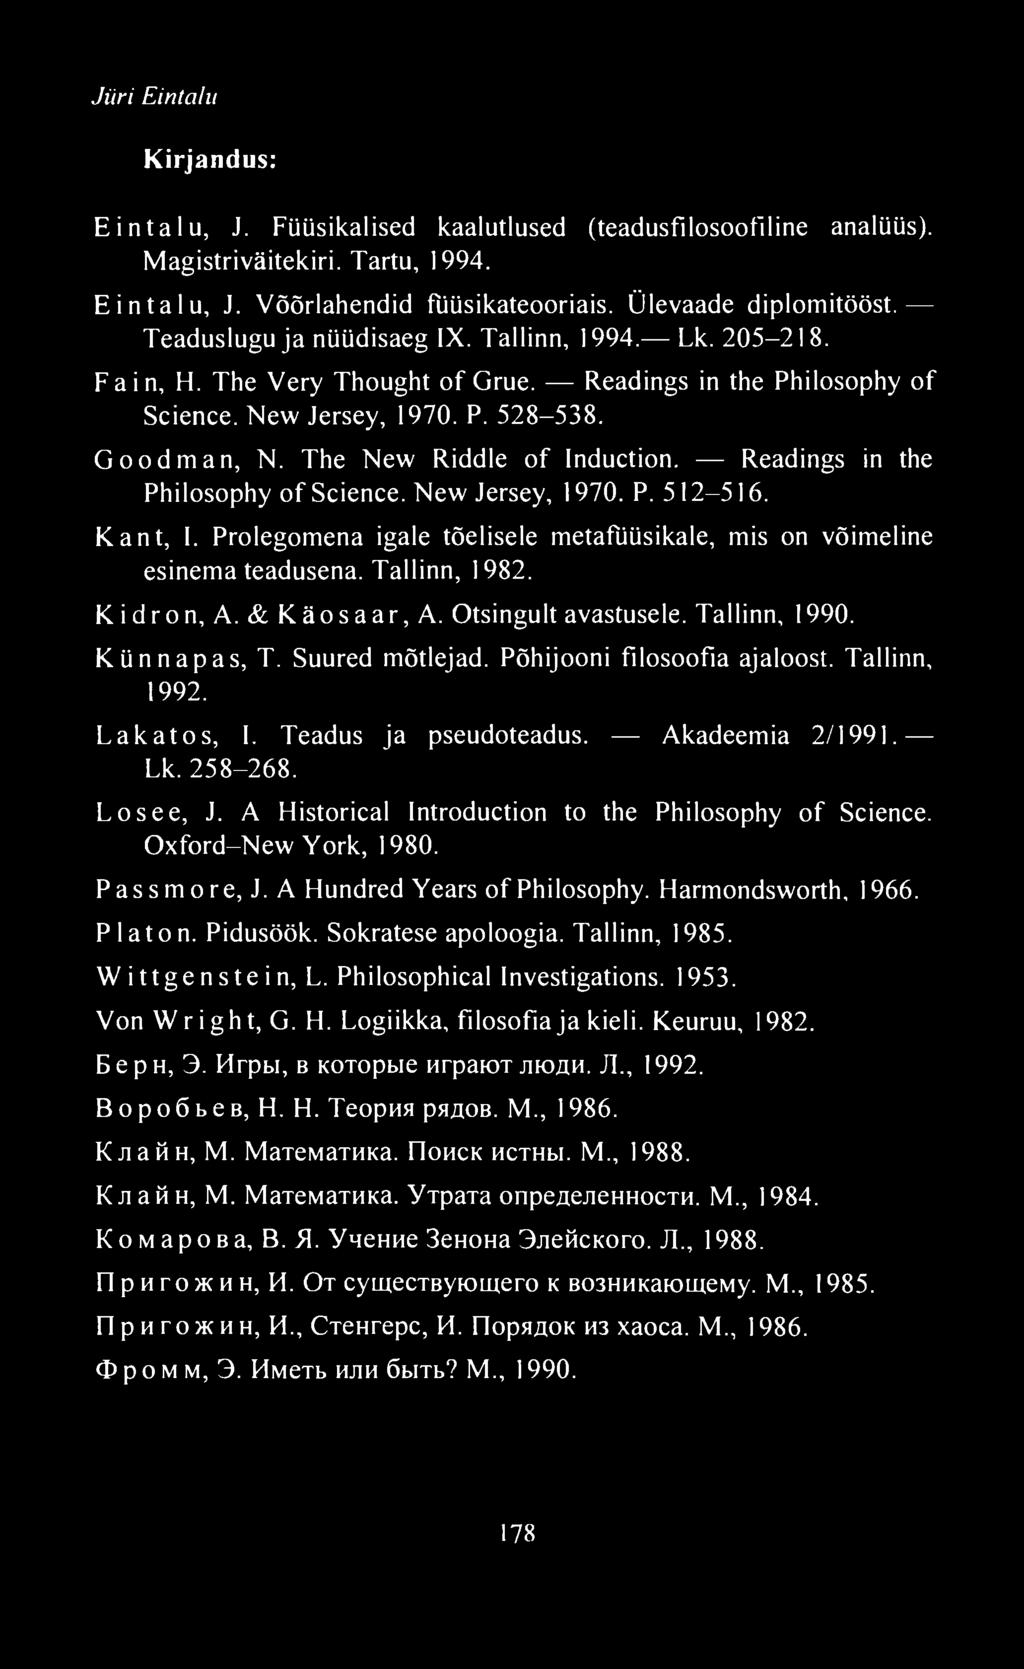 Readings in the Philosophy of Science. New Jersey, 1970. P. 512-516. Kant, I. Prolegomena igale tõelisele metafüüsikale, mis on võimeline esinema teadusena. Tallinn, 1982. Kidron, A. & Käosaar, A.